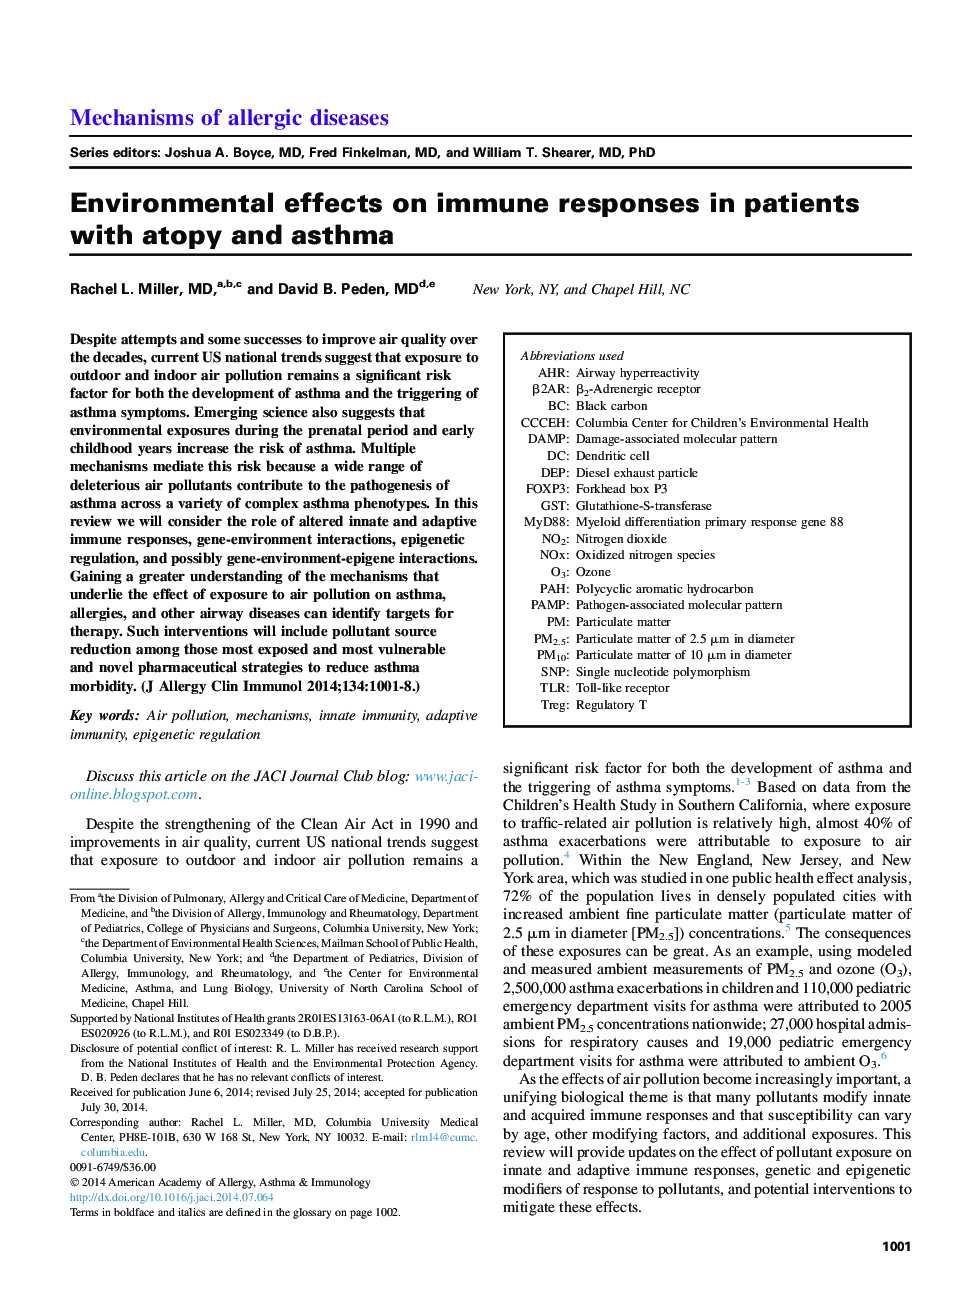 اثرات محیطی بر پاسخ ایمنی در بیماران مبتلا به آتوپیک و آسم 